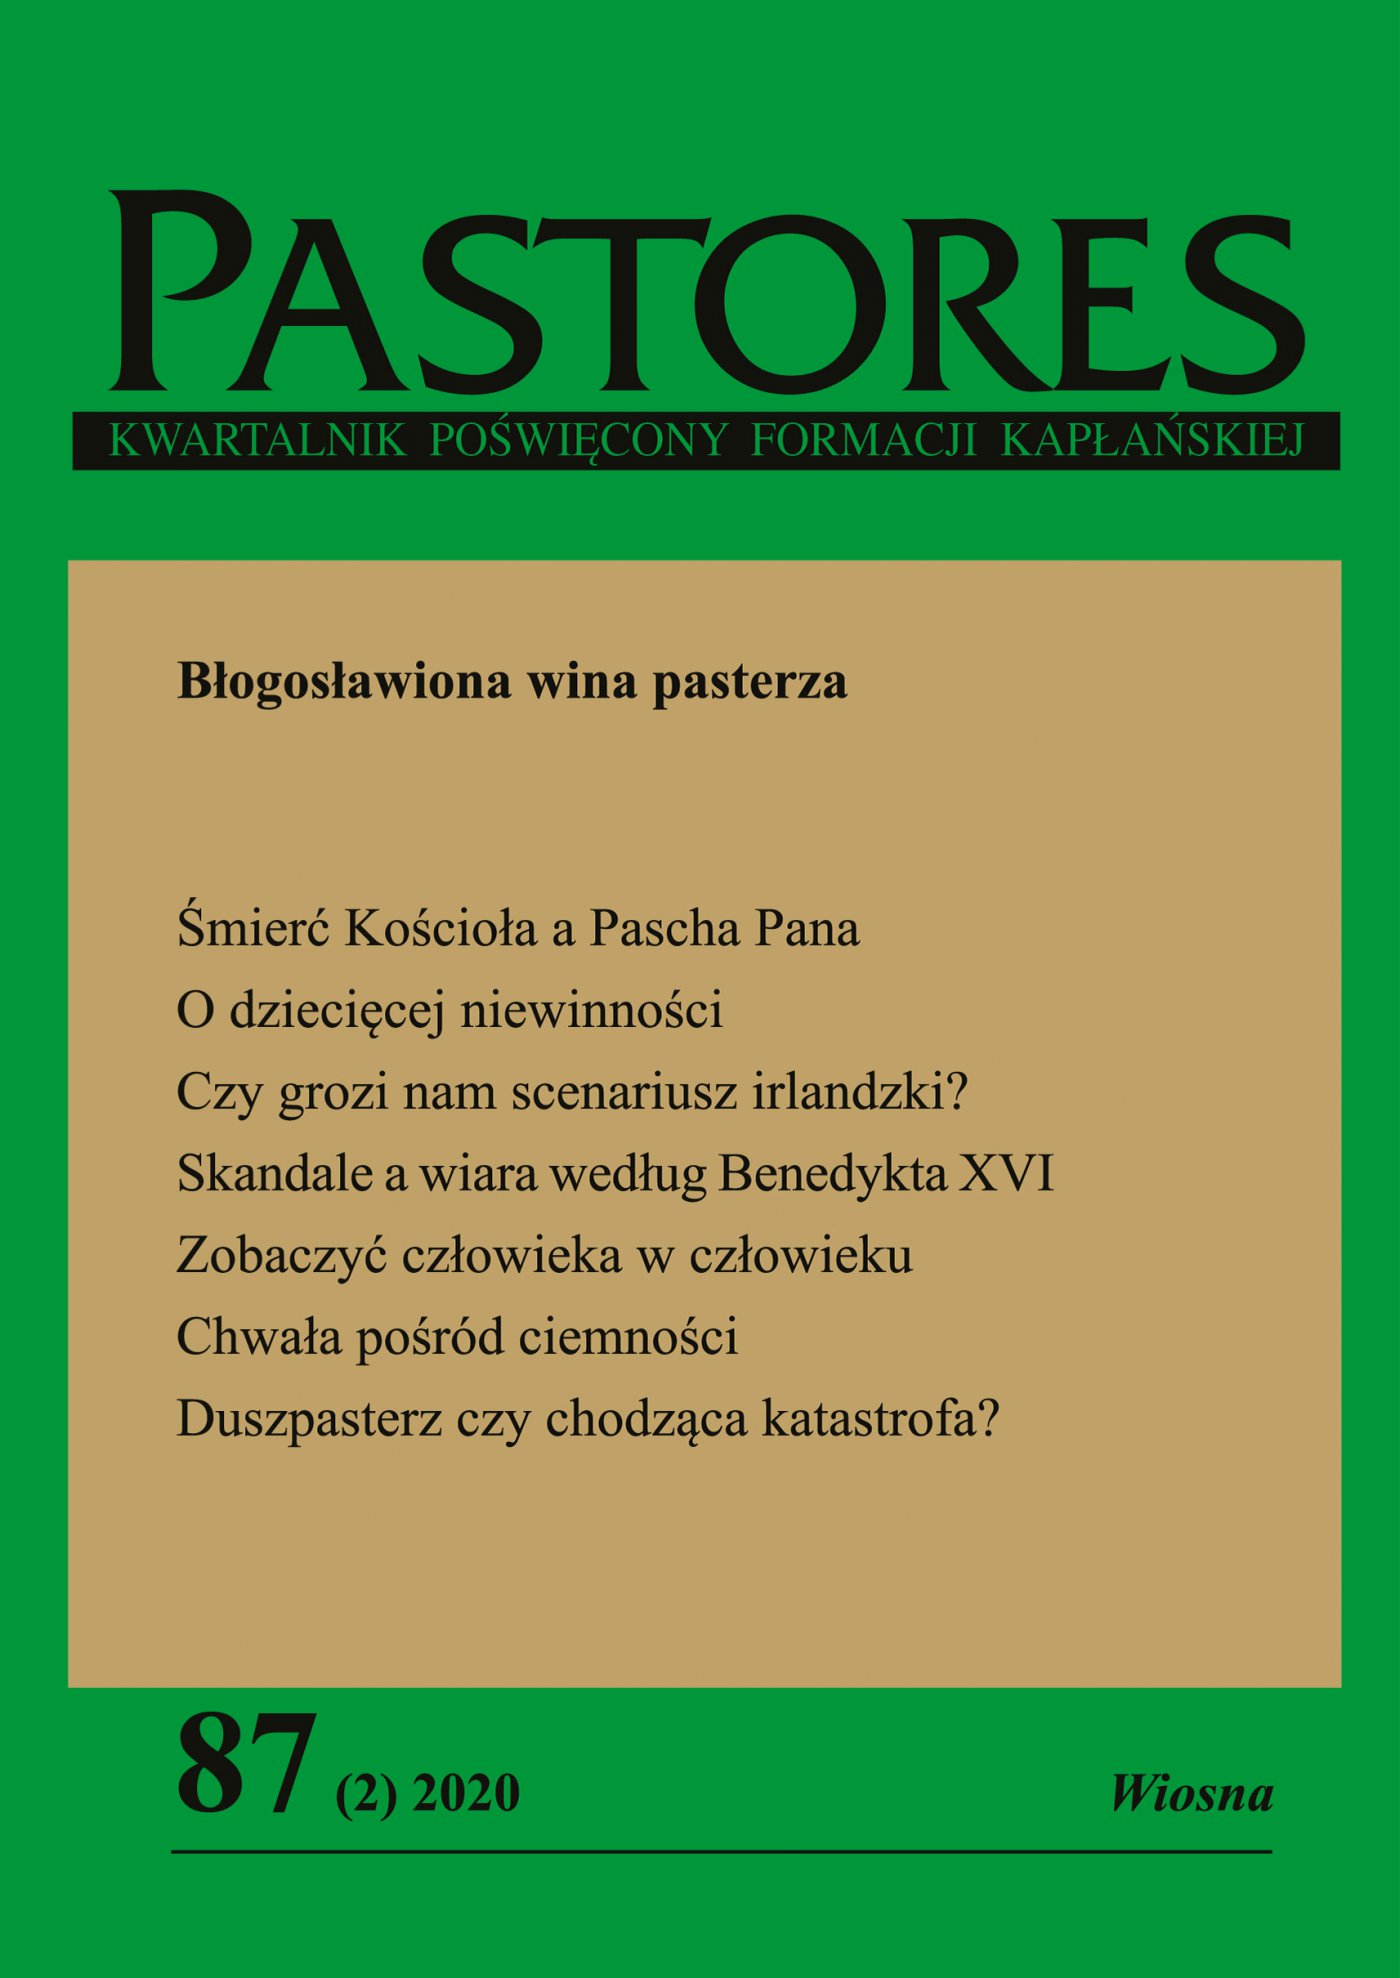 Pastores 87 (2) 2020 - Ebook (Książka EPUB) do pobrania w formacie EPUB